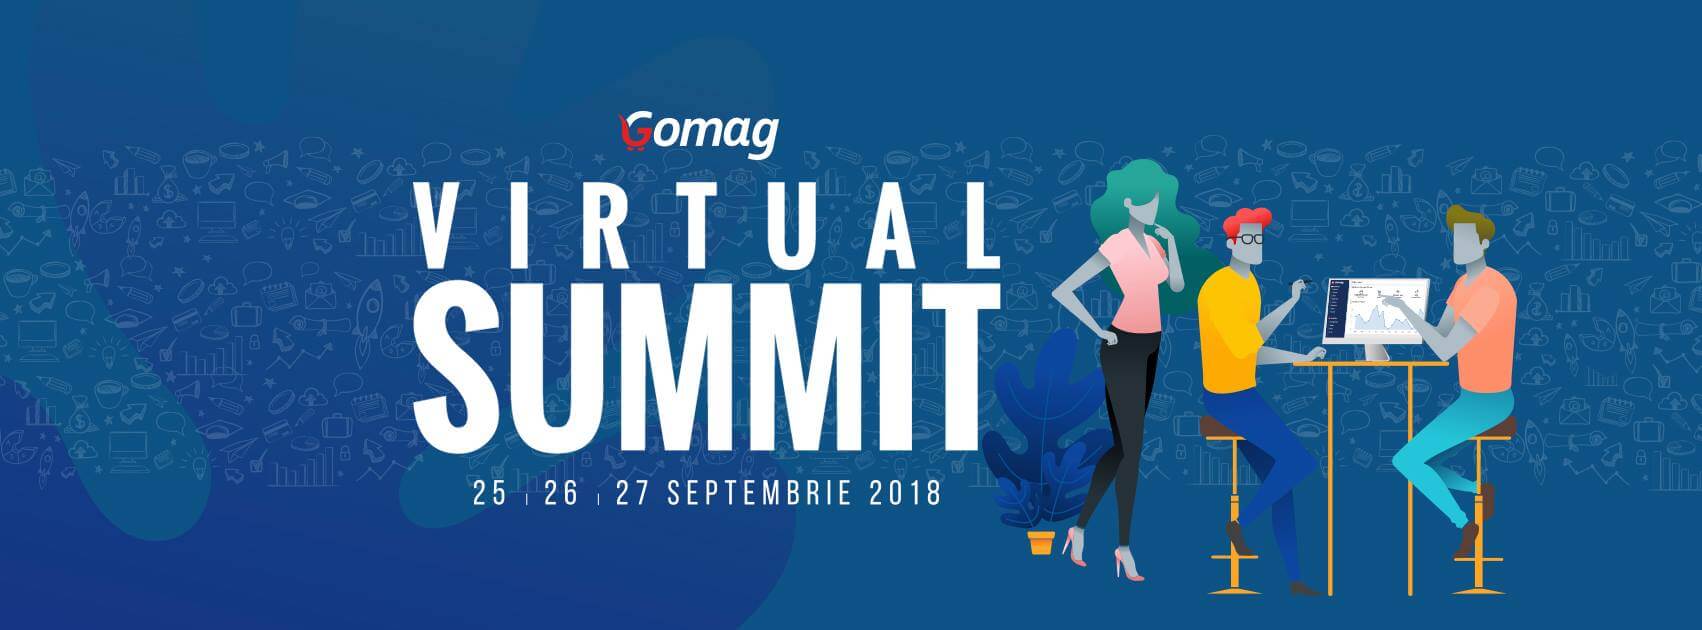 Gomag Virtual Summit 2018 la start